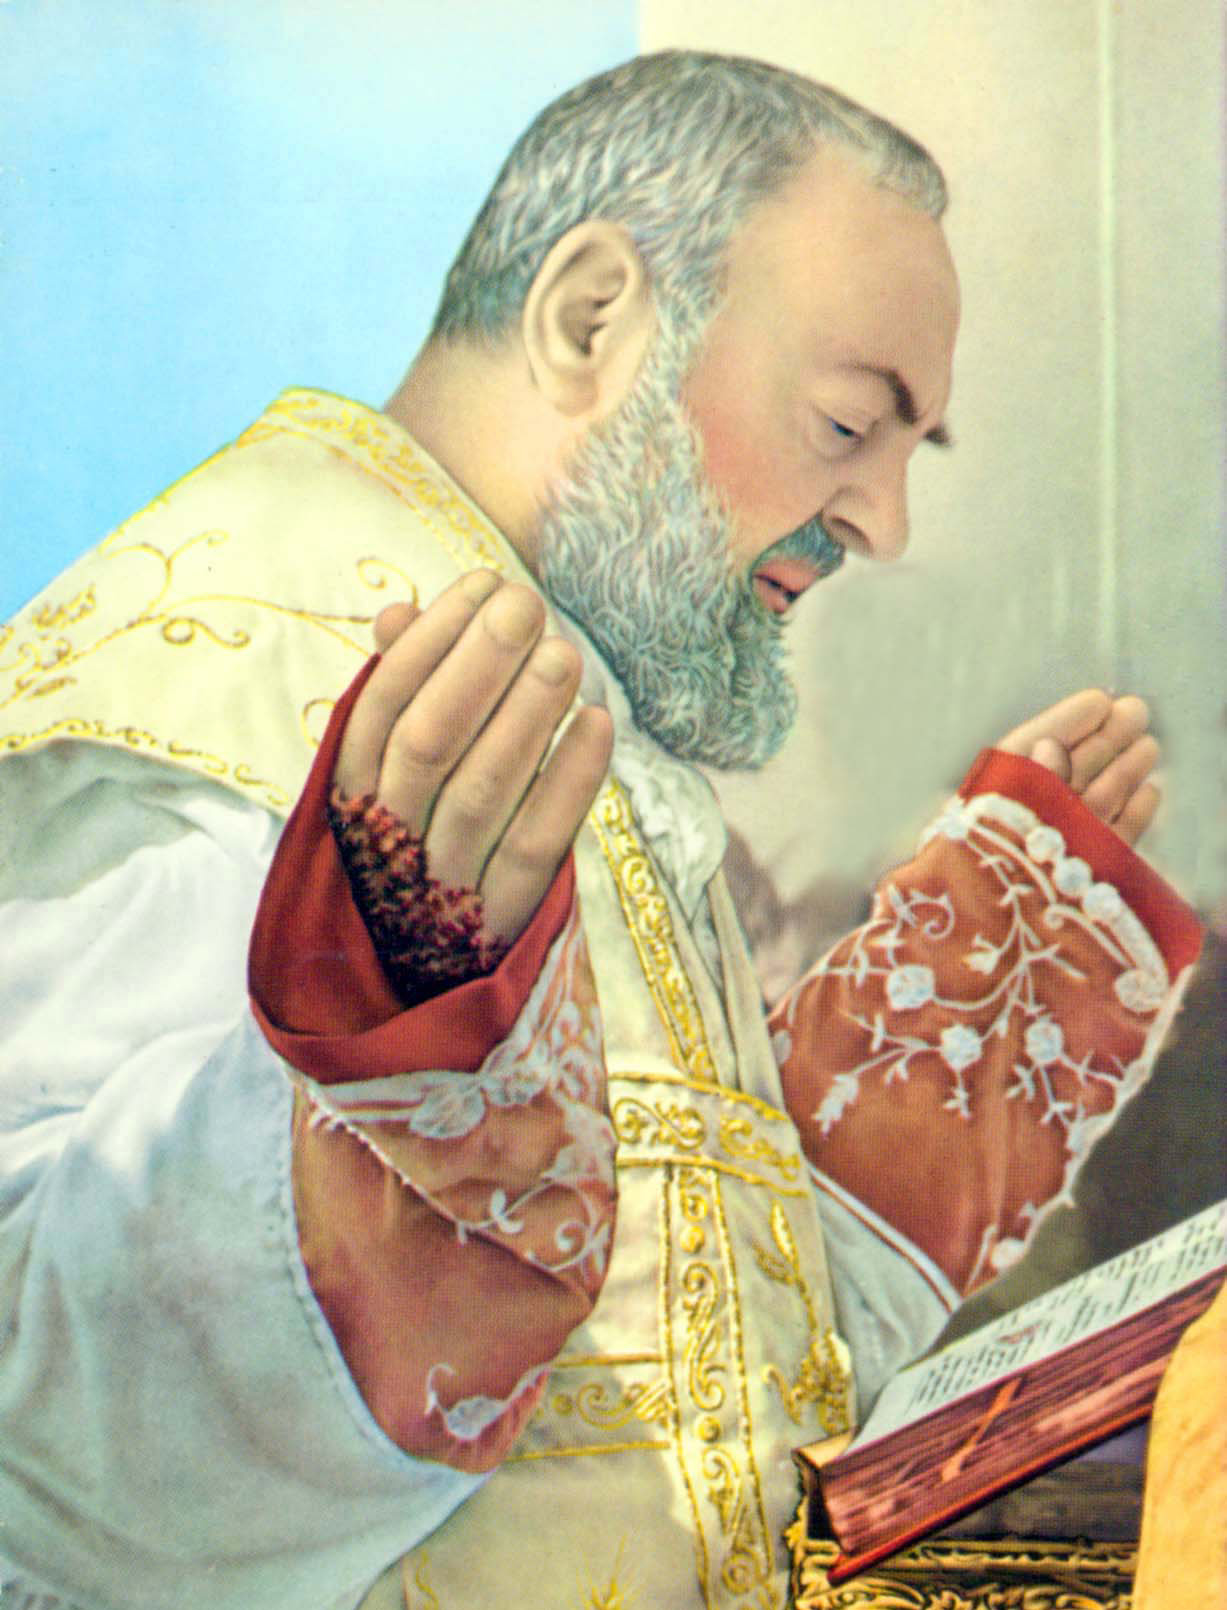  <a href="https://www.palmaryanongsimbahan.org/san-pio-ng-pietrelcina/" title="San Pio ng Pietrelcina">San Pio ng Pietrelcina<br><br>Tingnan pa</a>